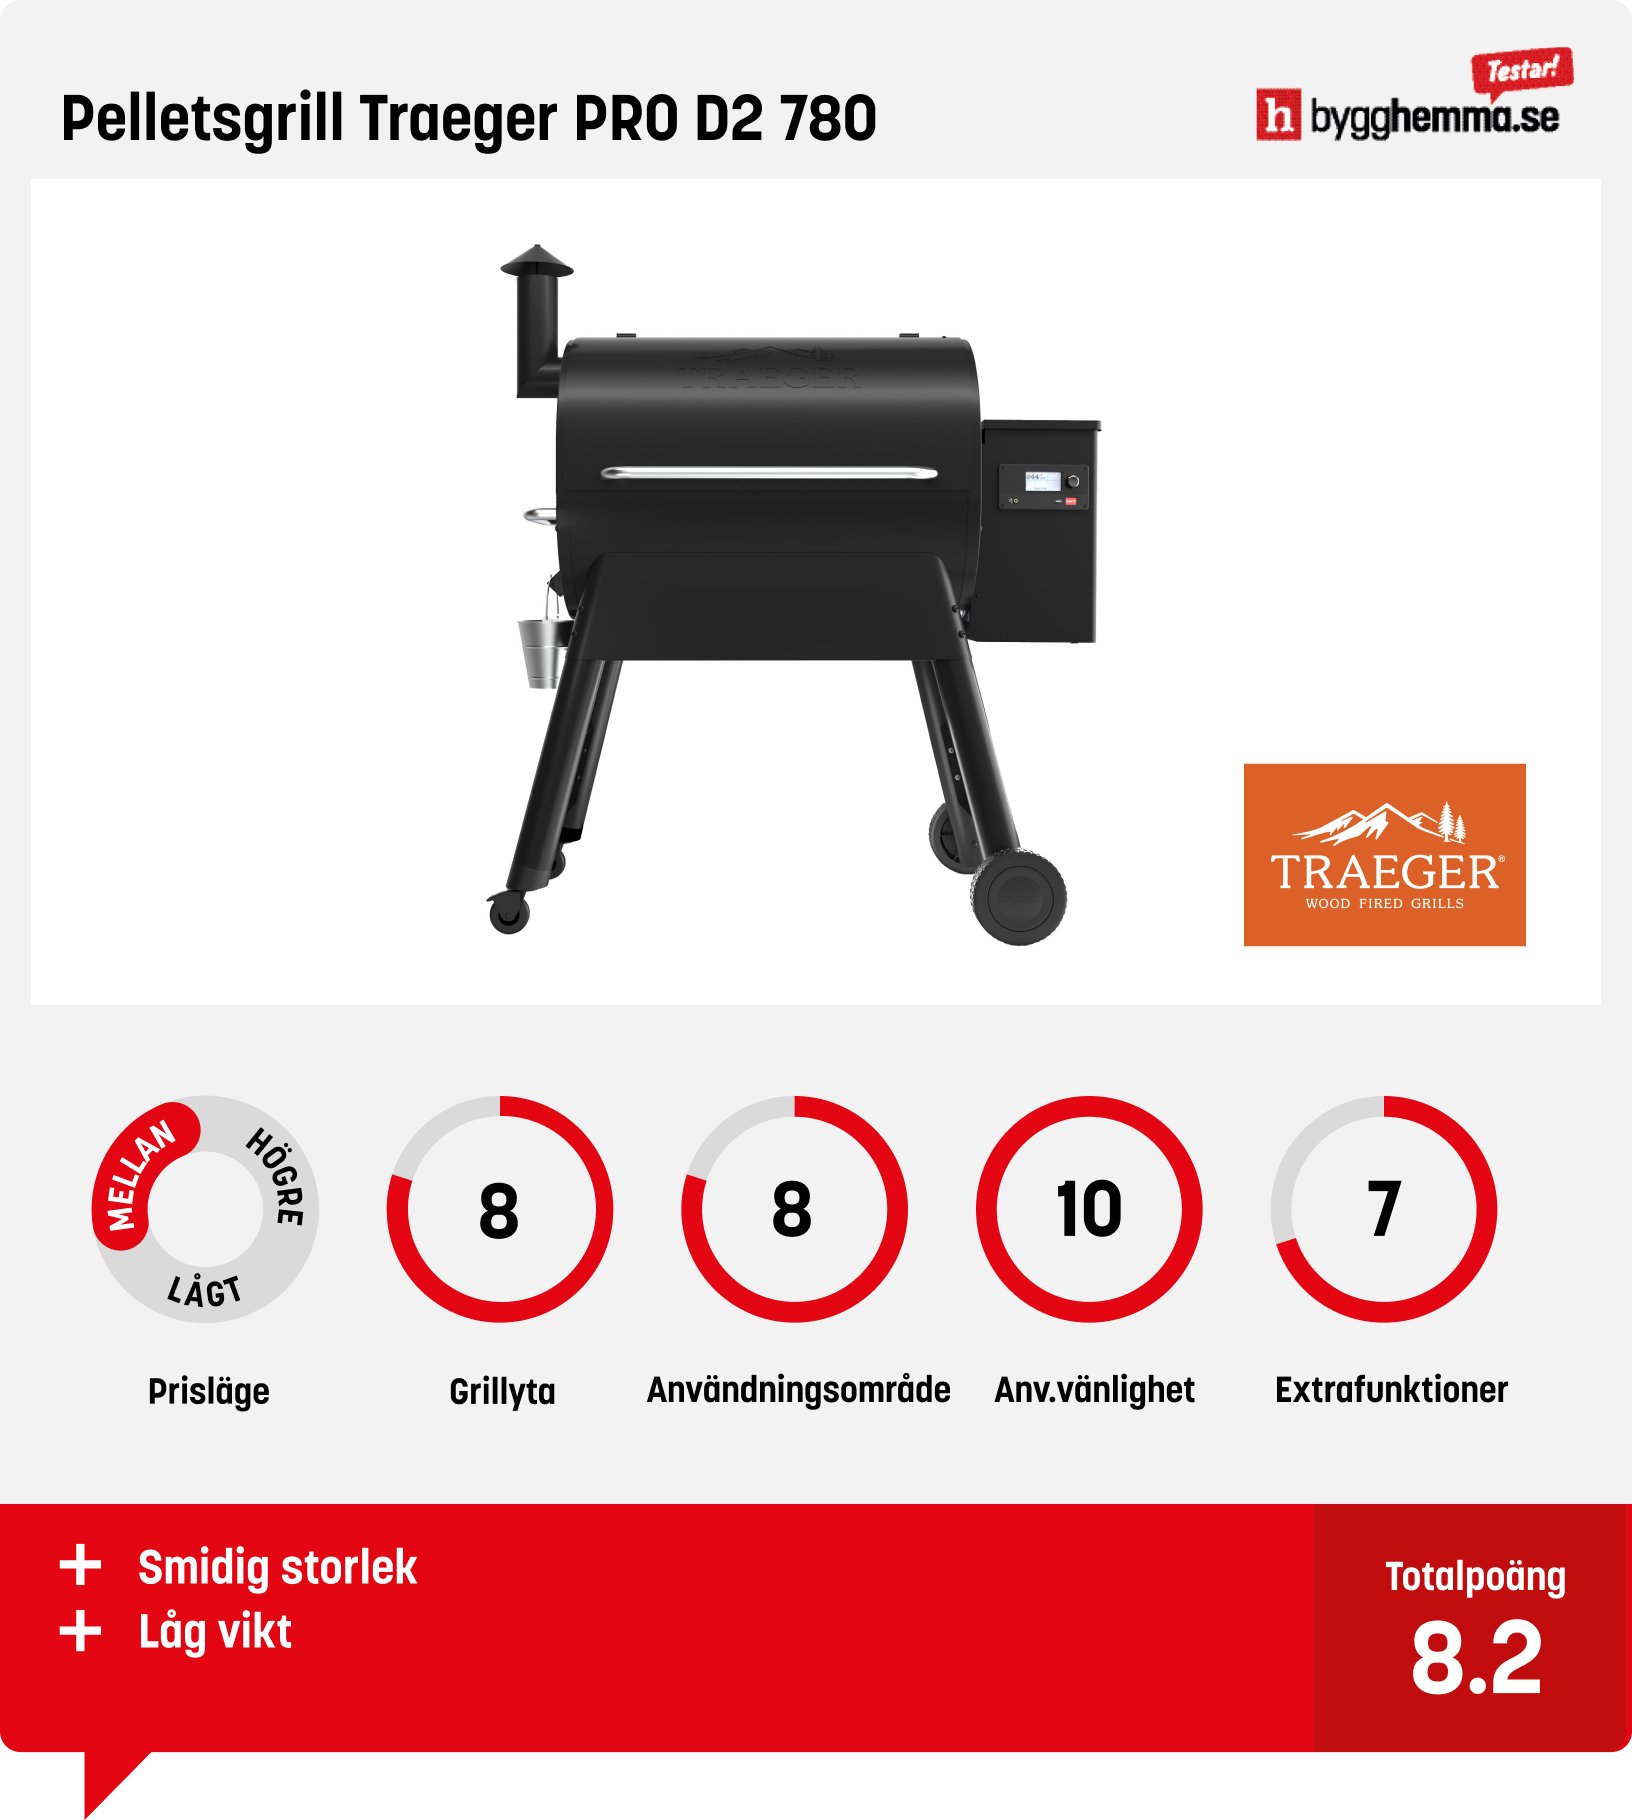 Pelletsgrill test - Pelletsgrill Traeger PRO D2 780